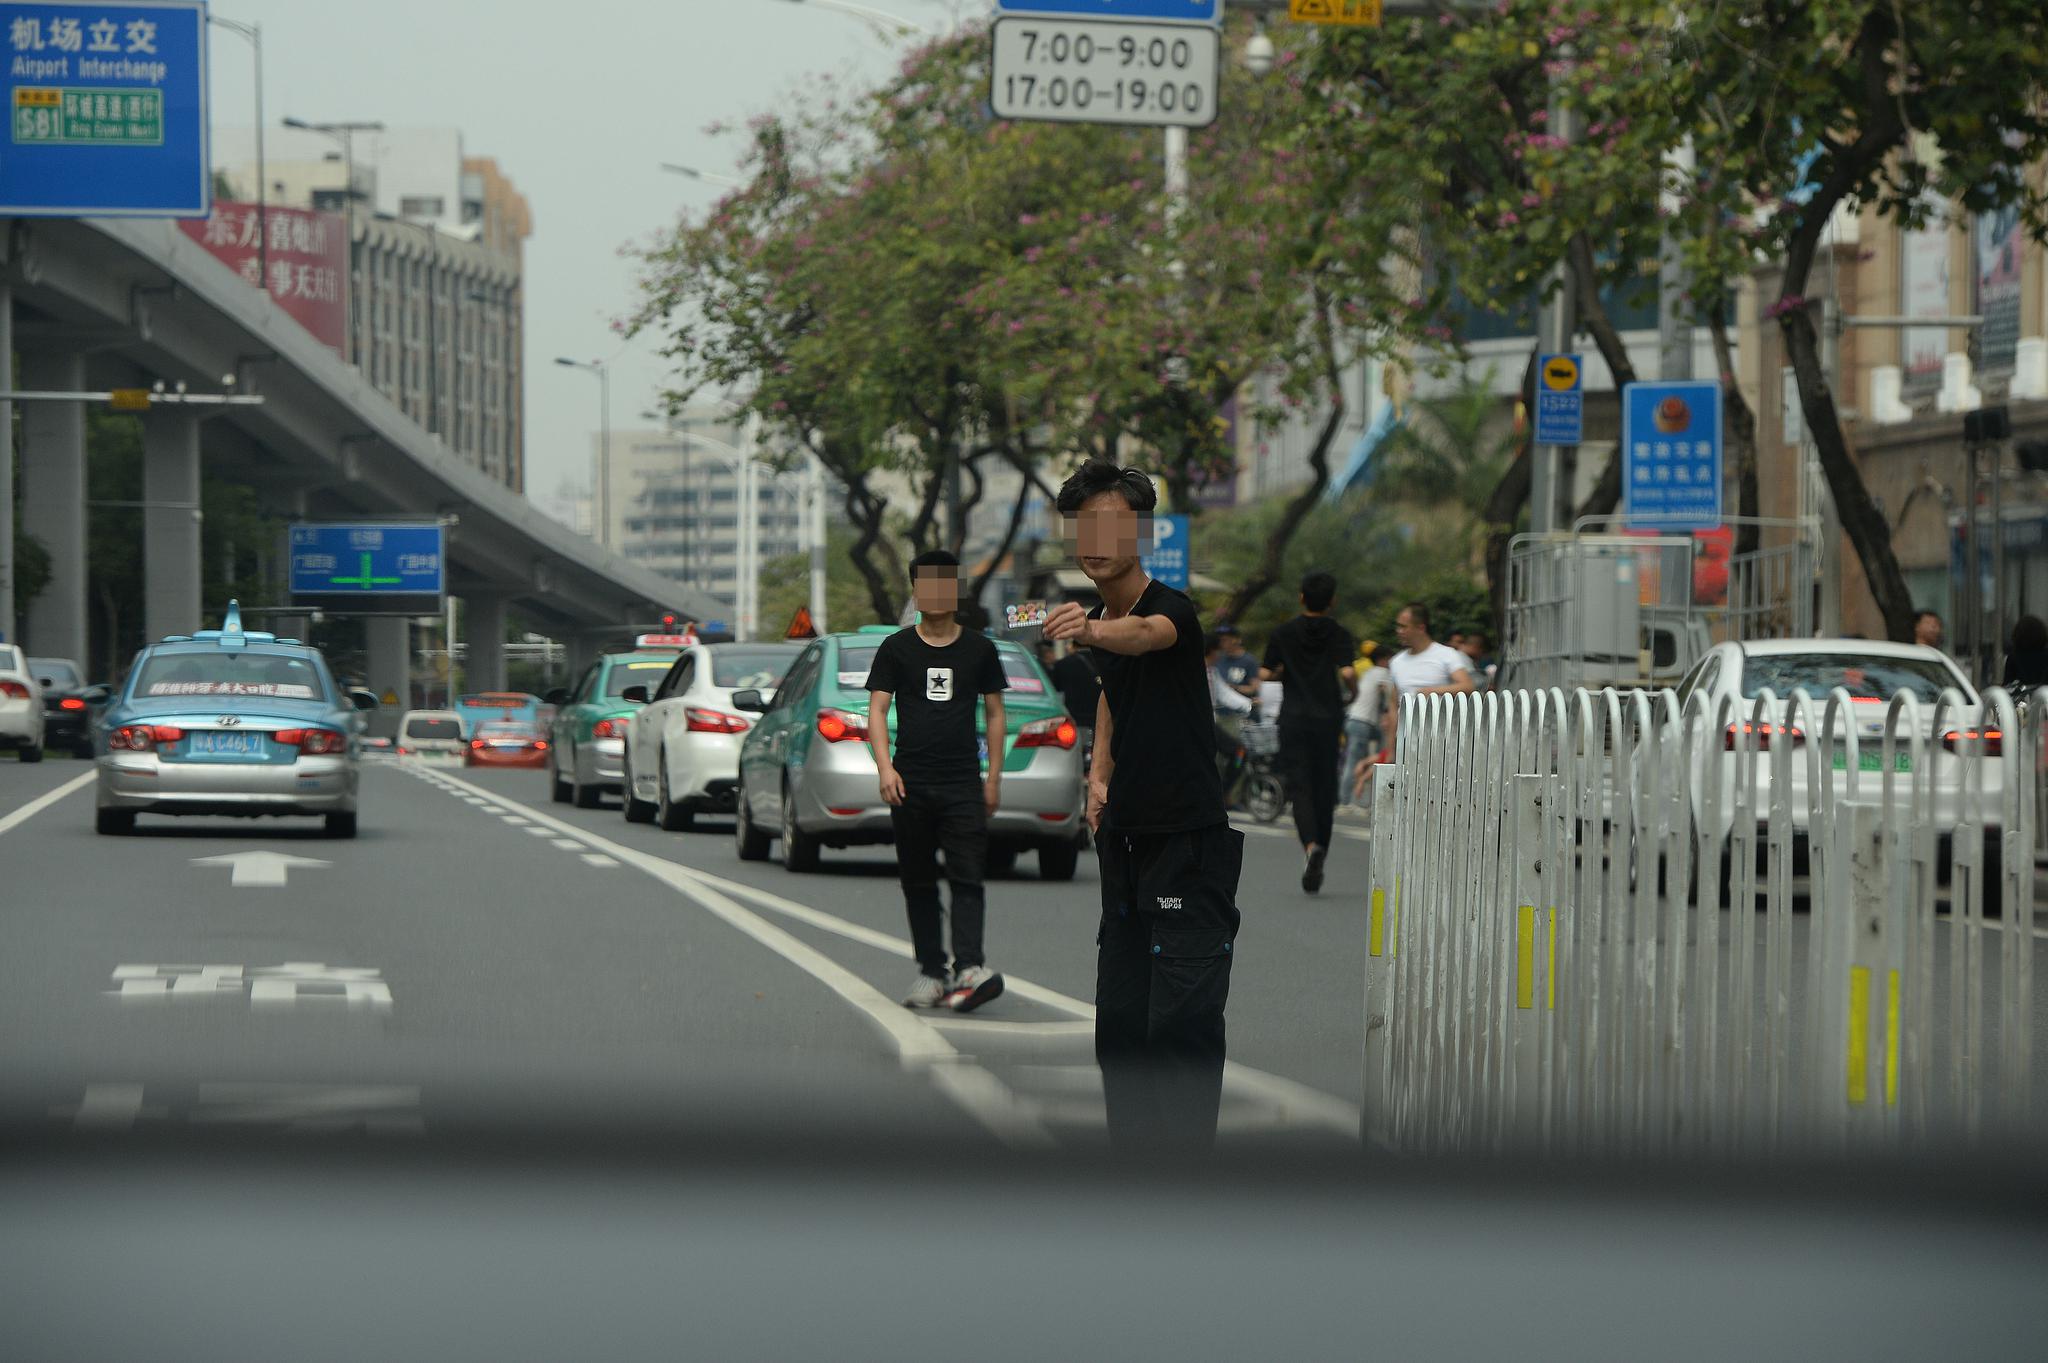 3月17日下午，广州市白云世界皮具贸易中心门前的解放北路，一名拉客人员在机动车道上往一辆私家车内递名片。 新京报记者 吴江 摄